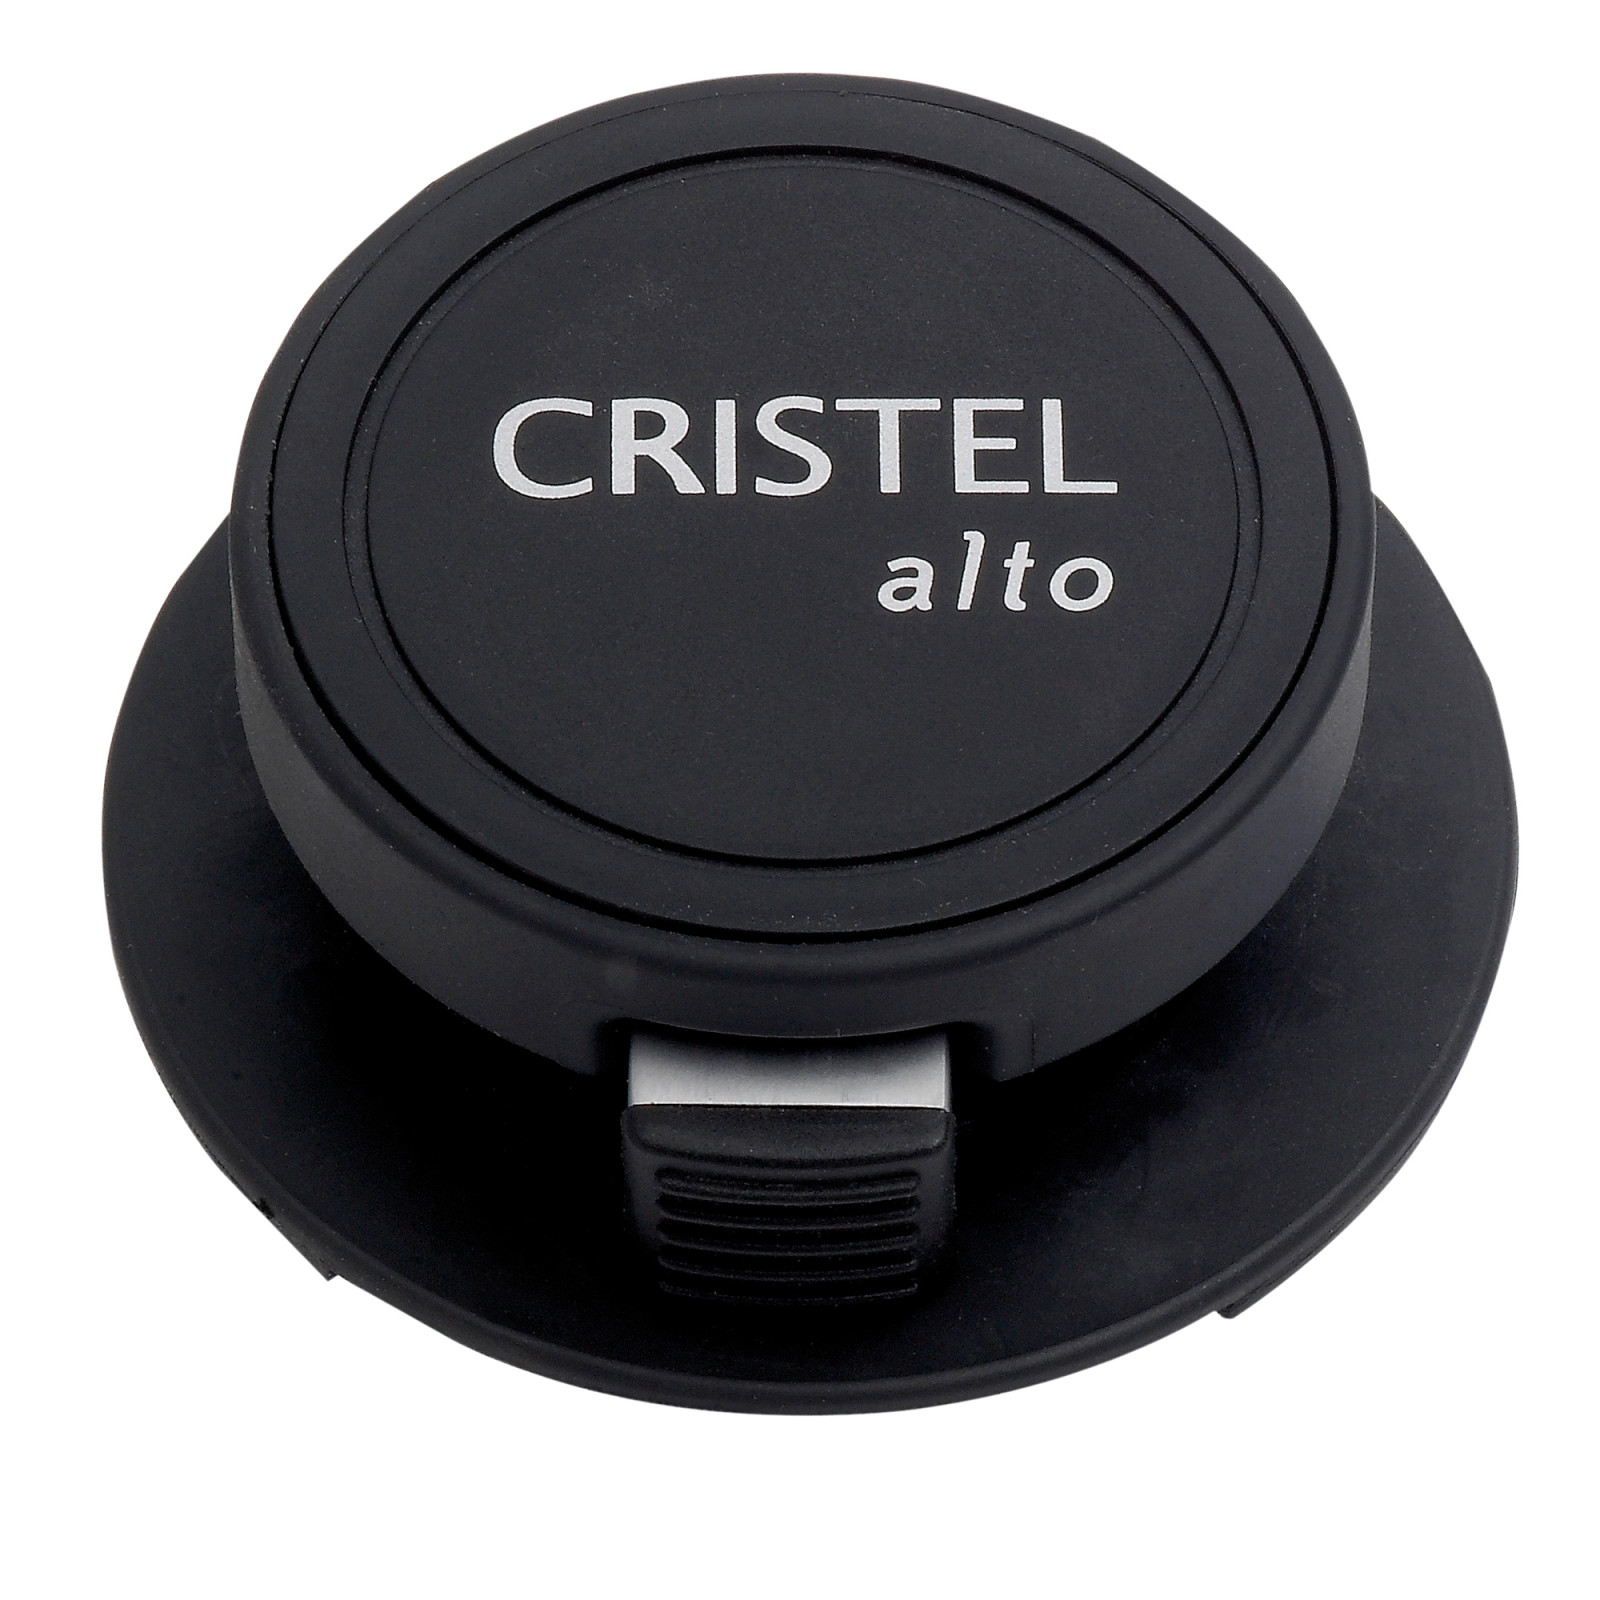 Cristel - Autocuiseur Alto 6L - Le Comptoir de France